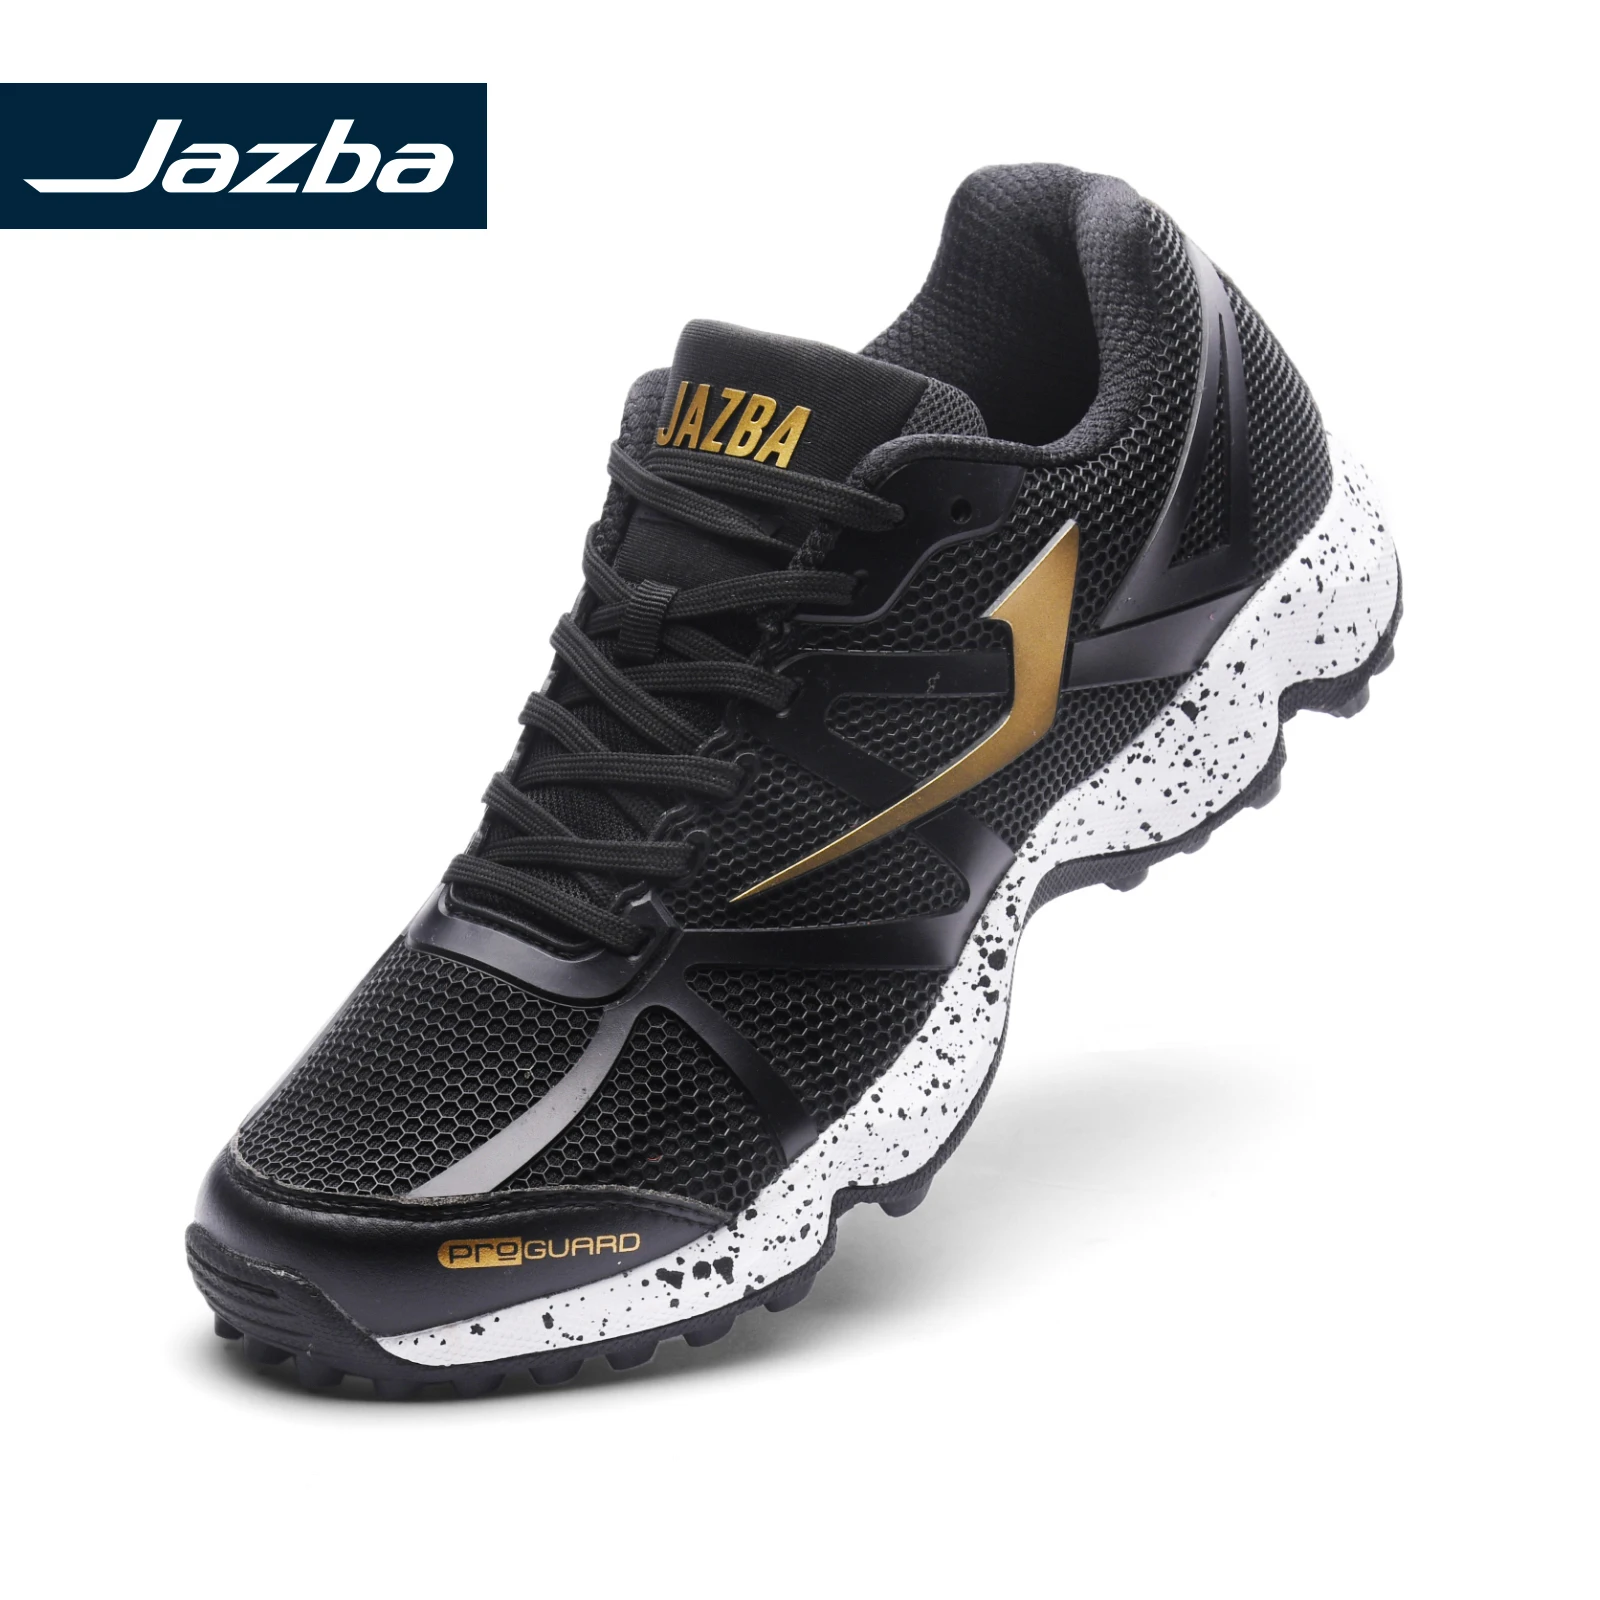 JAZBA افعي 2.1 الرجال الهوكي الأحذية المهنية هوكي أحذية تدريب المطاط المرابط الأحذية أسود حذاء الرياضة في الهواء الطلق